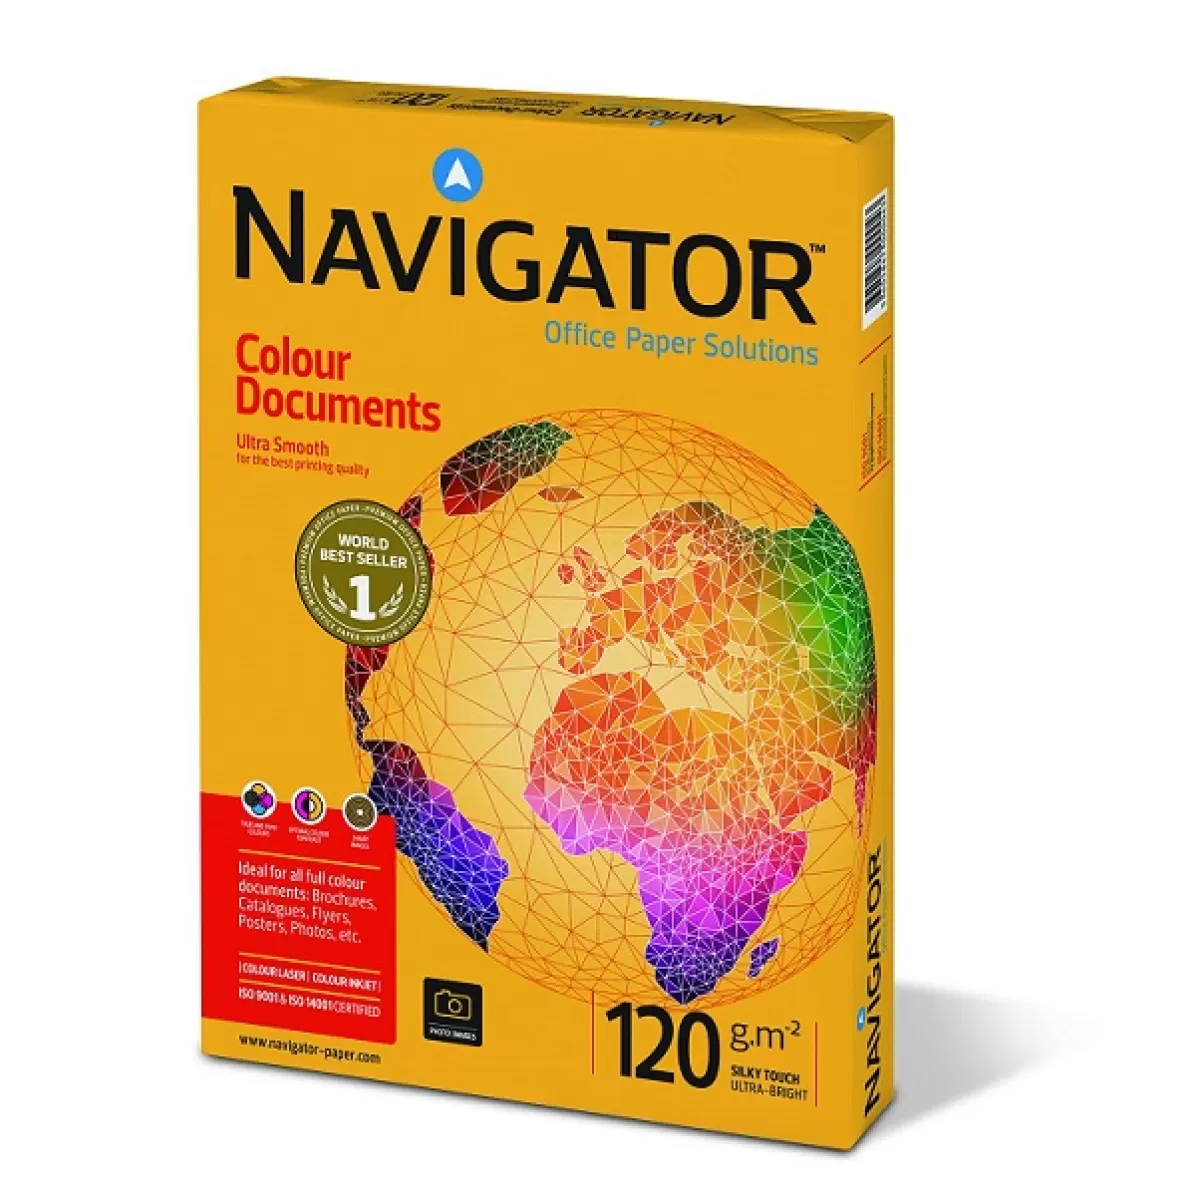 Хартия Navigator Colour Documents A4 250 л 120 g